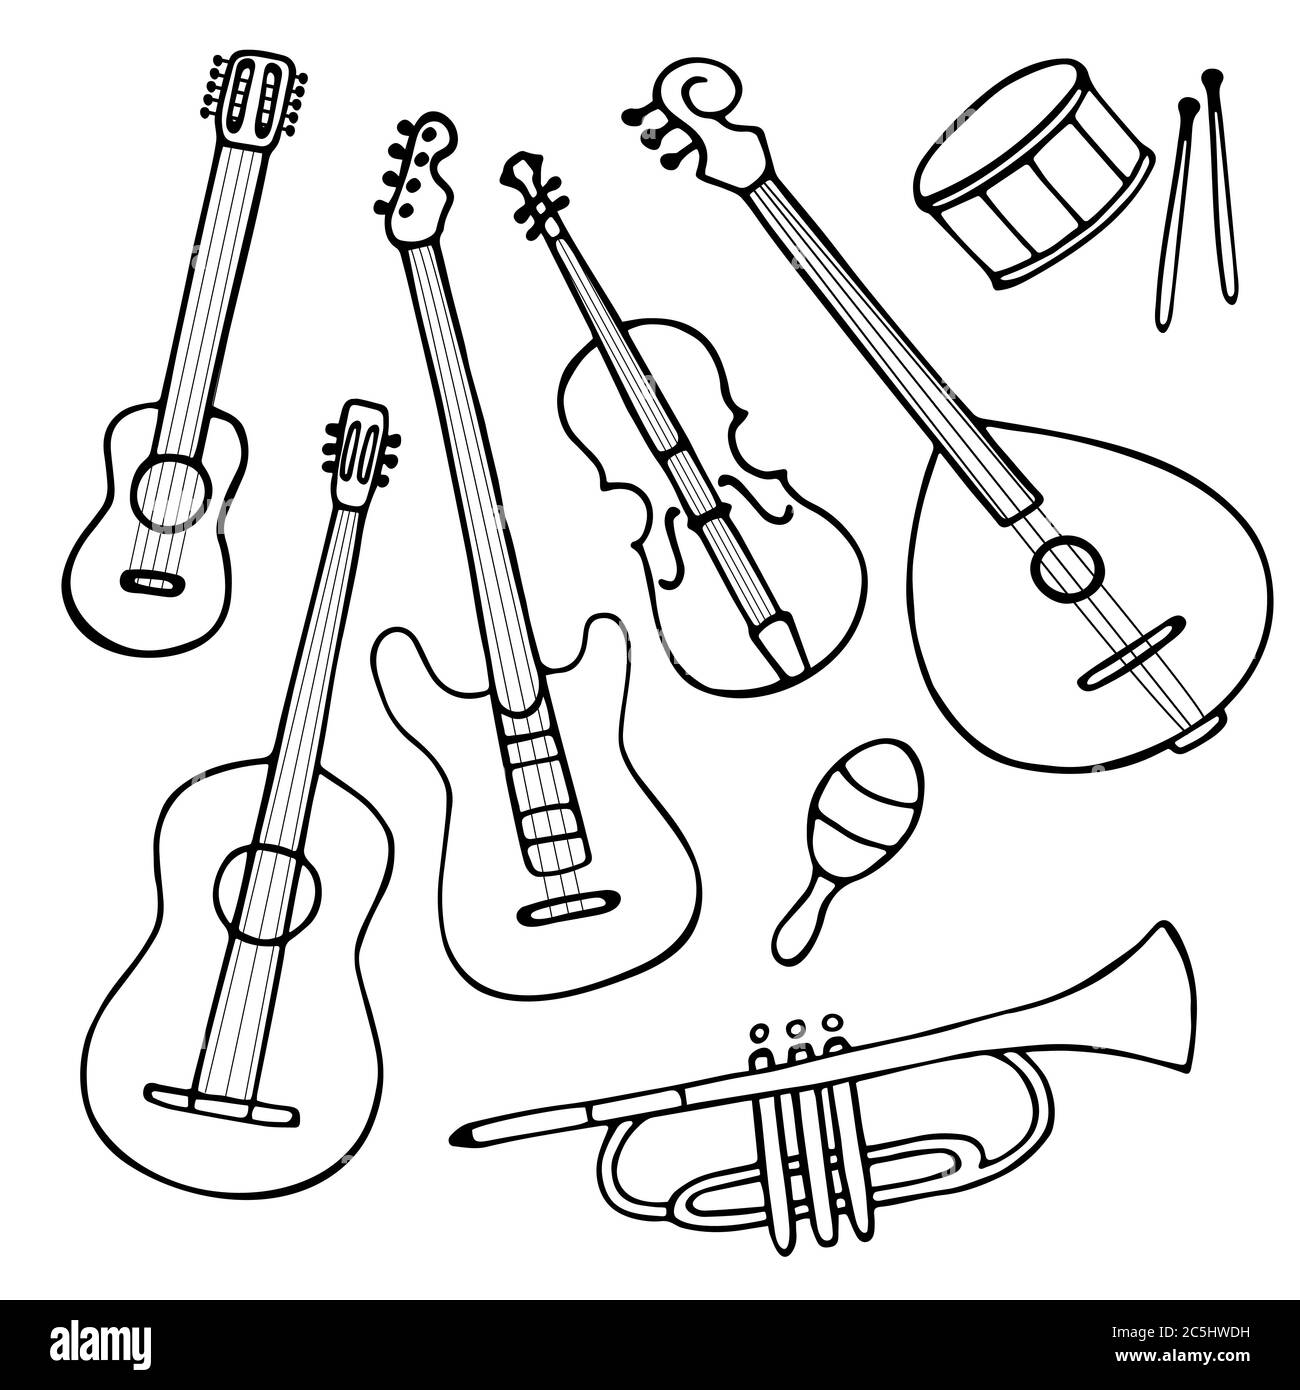 Un ensemble d'instruments de musique dessinés à la main. Doodle éléments de guitare, guitare électrique, ukulele, trompette, maracas, domra, violon. Vecteur Illustration de Vecteur